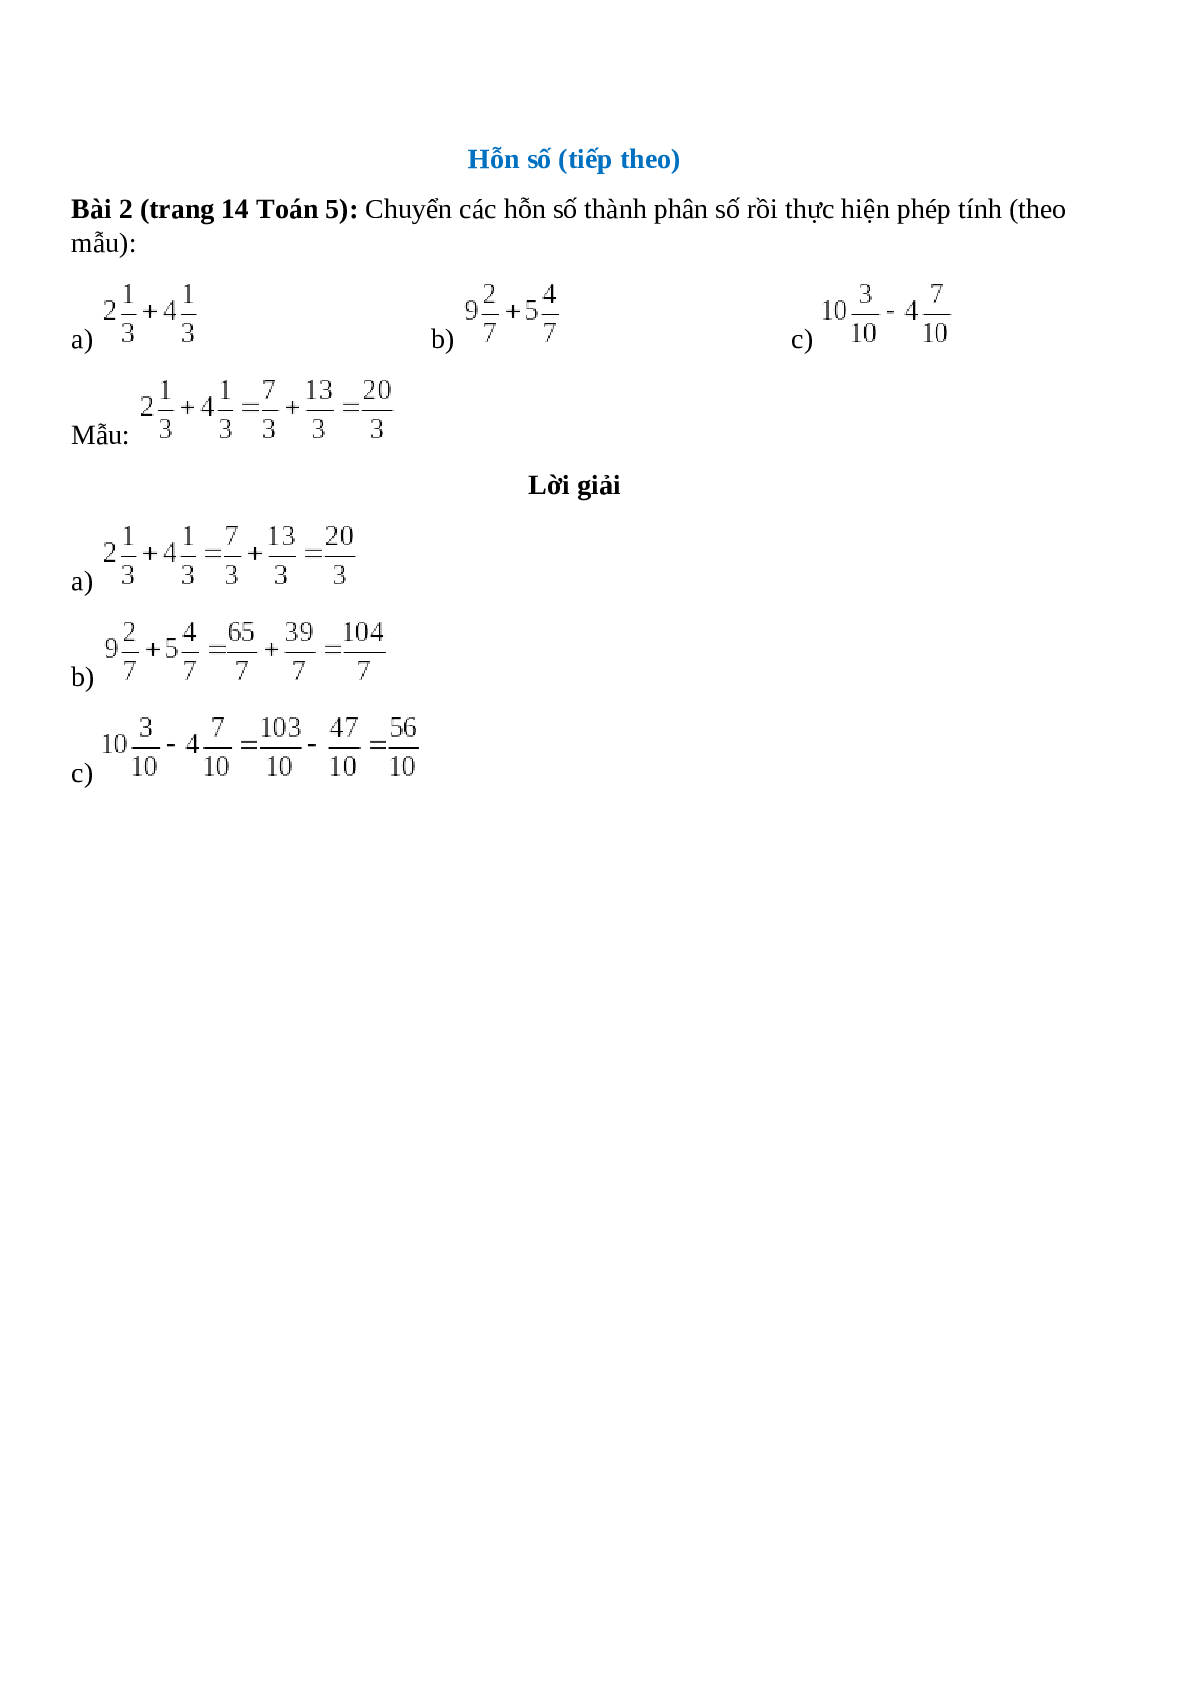 Chuyển các hỗn số thành phân số rồi thực hiện phép tính (theo mẫu) Bài 2 trang 14 Toán 5 (trang 1)